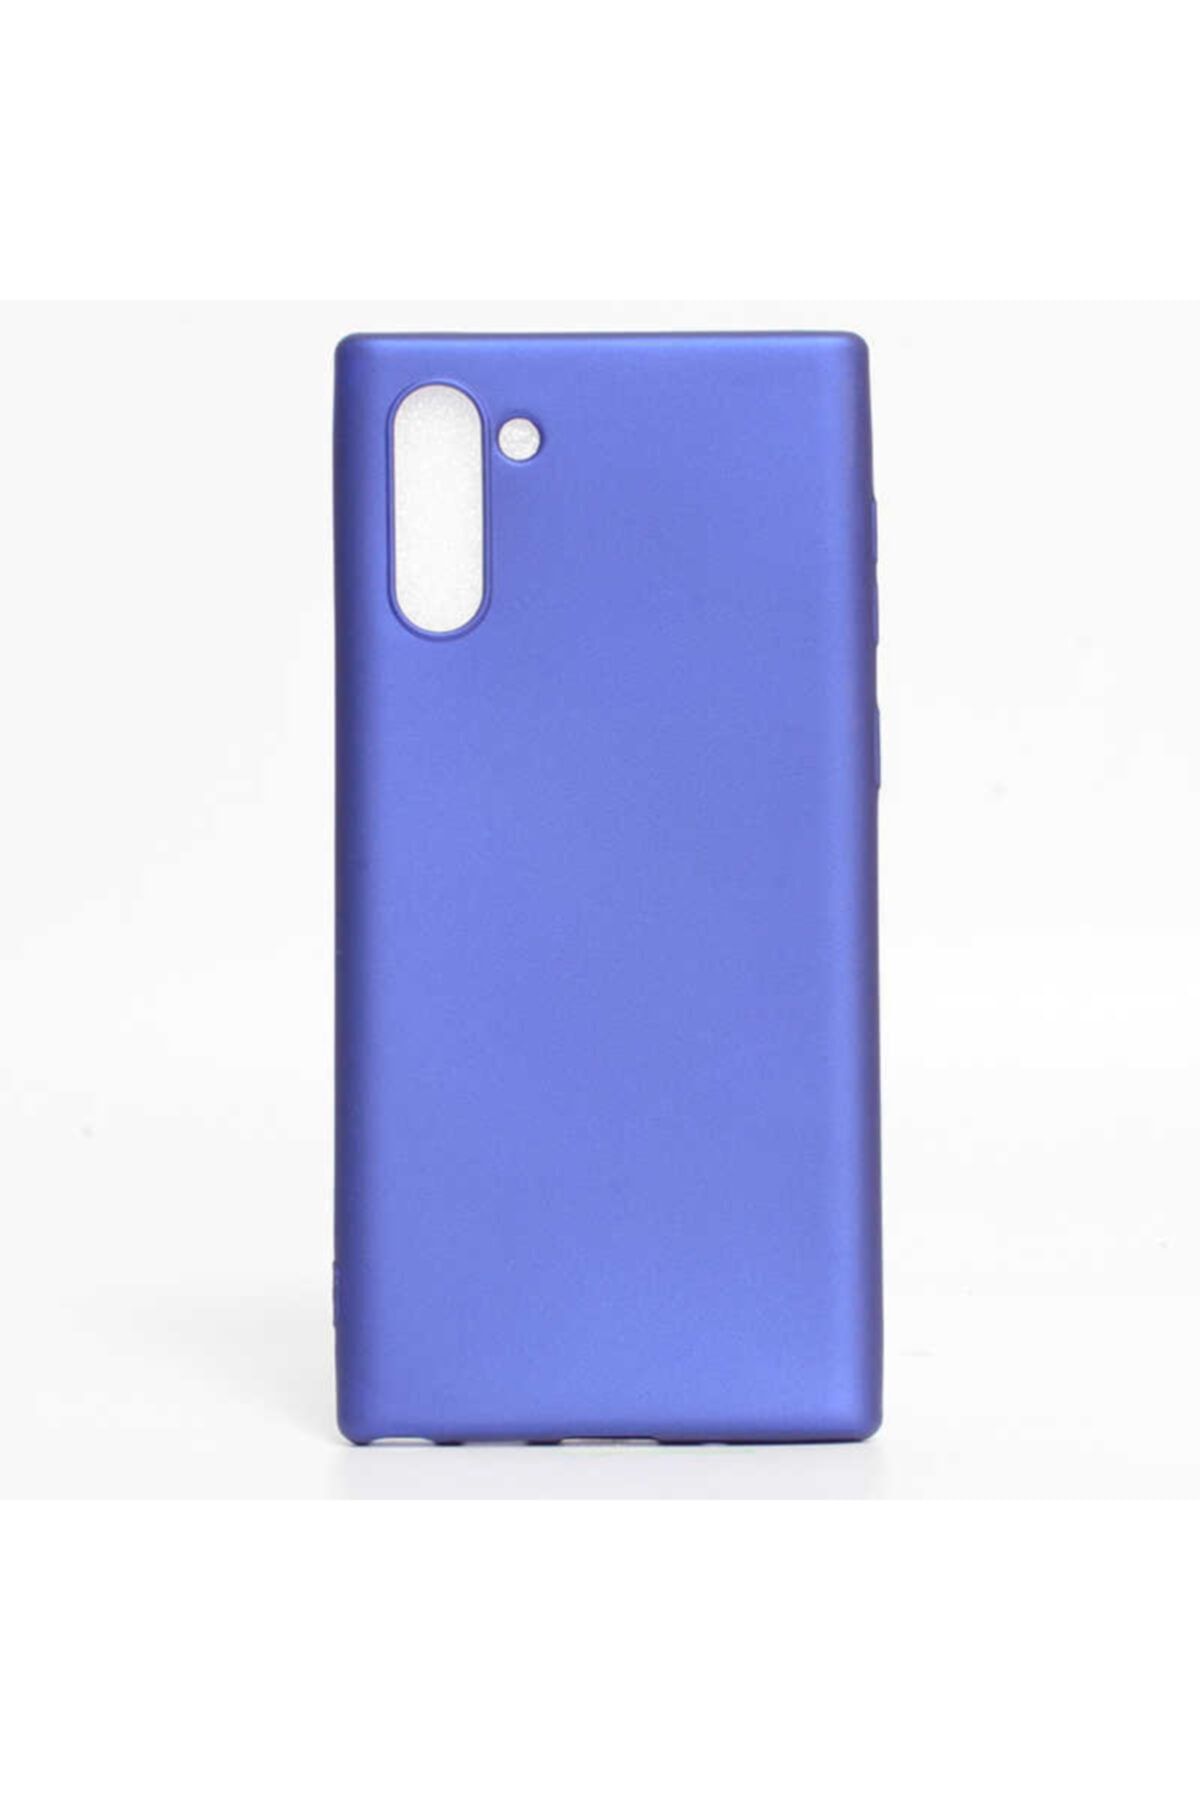 İncisoft Samsung Galaxy Note 10 Kılıf Ultra Ince Silikon Yumuşak Yüzey Arka Kapak Saks Mavi